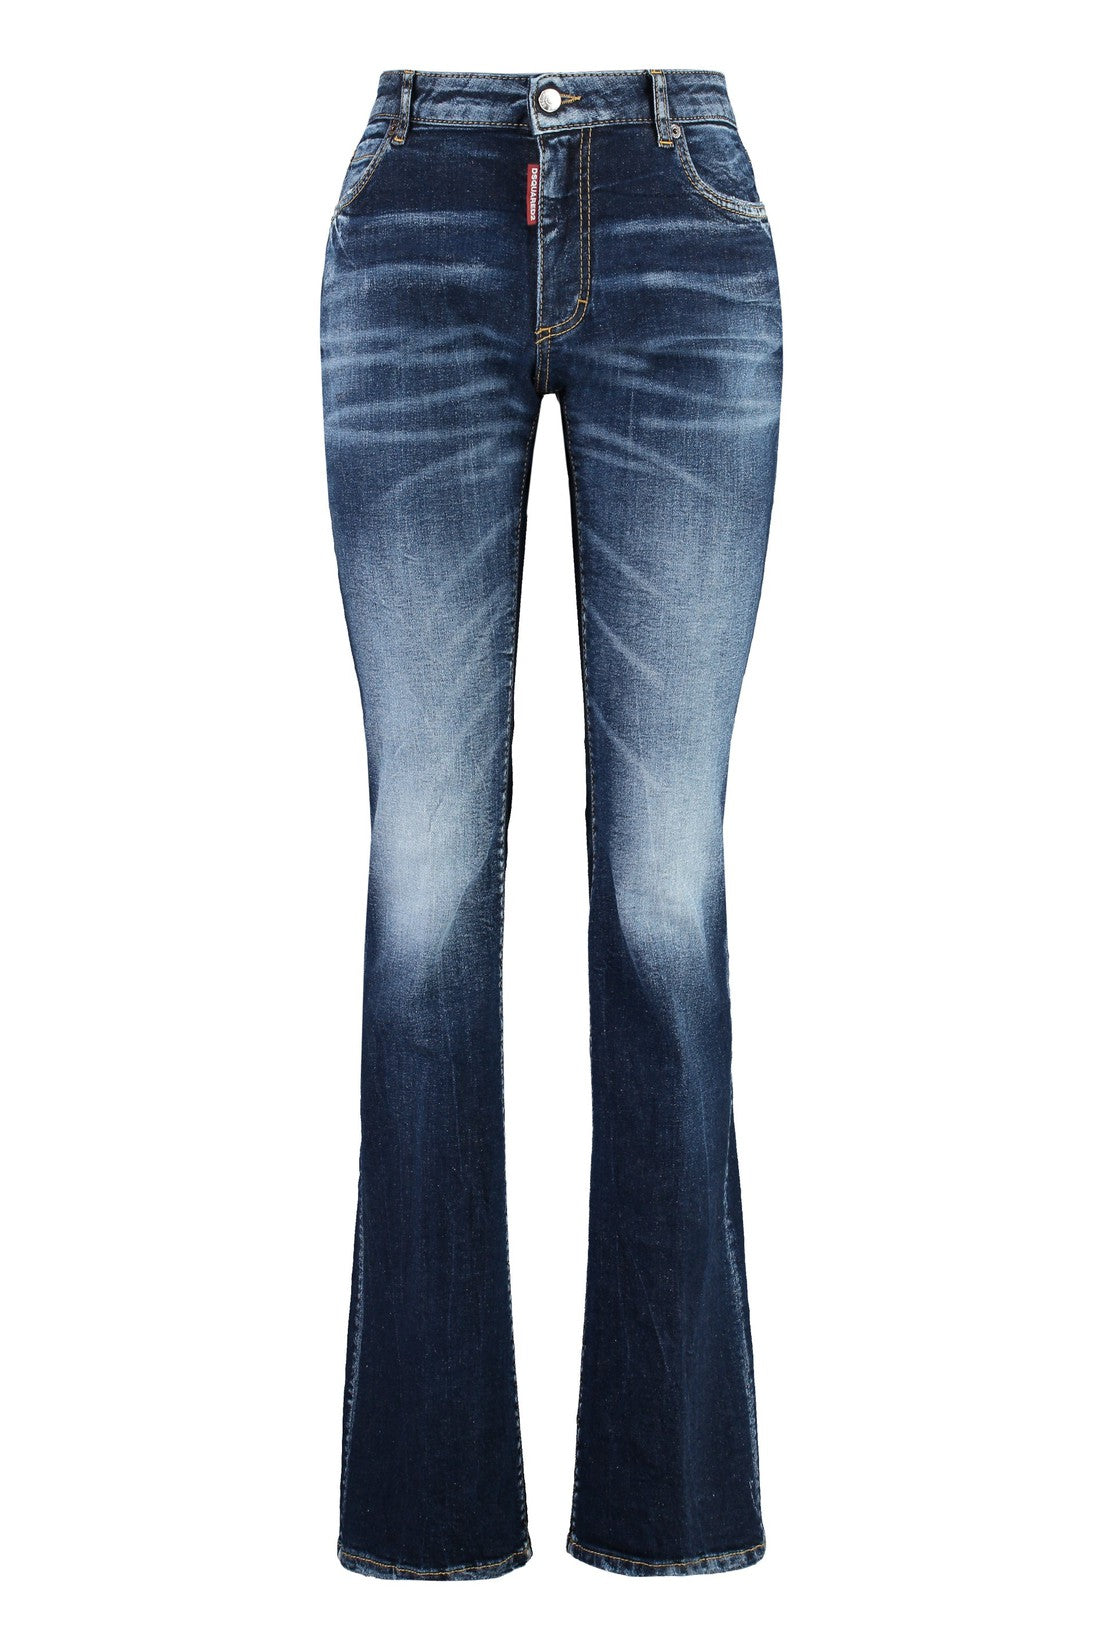 Dsquared2-OUTLET-SALE-Twiggy jeans-ARCHIVIST